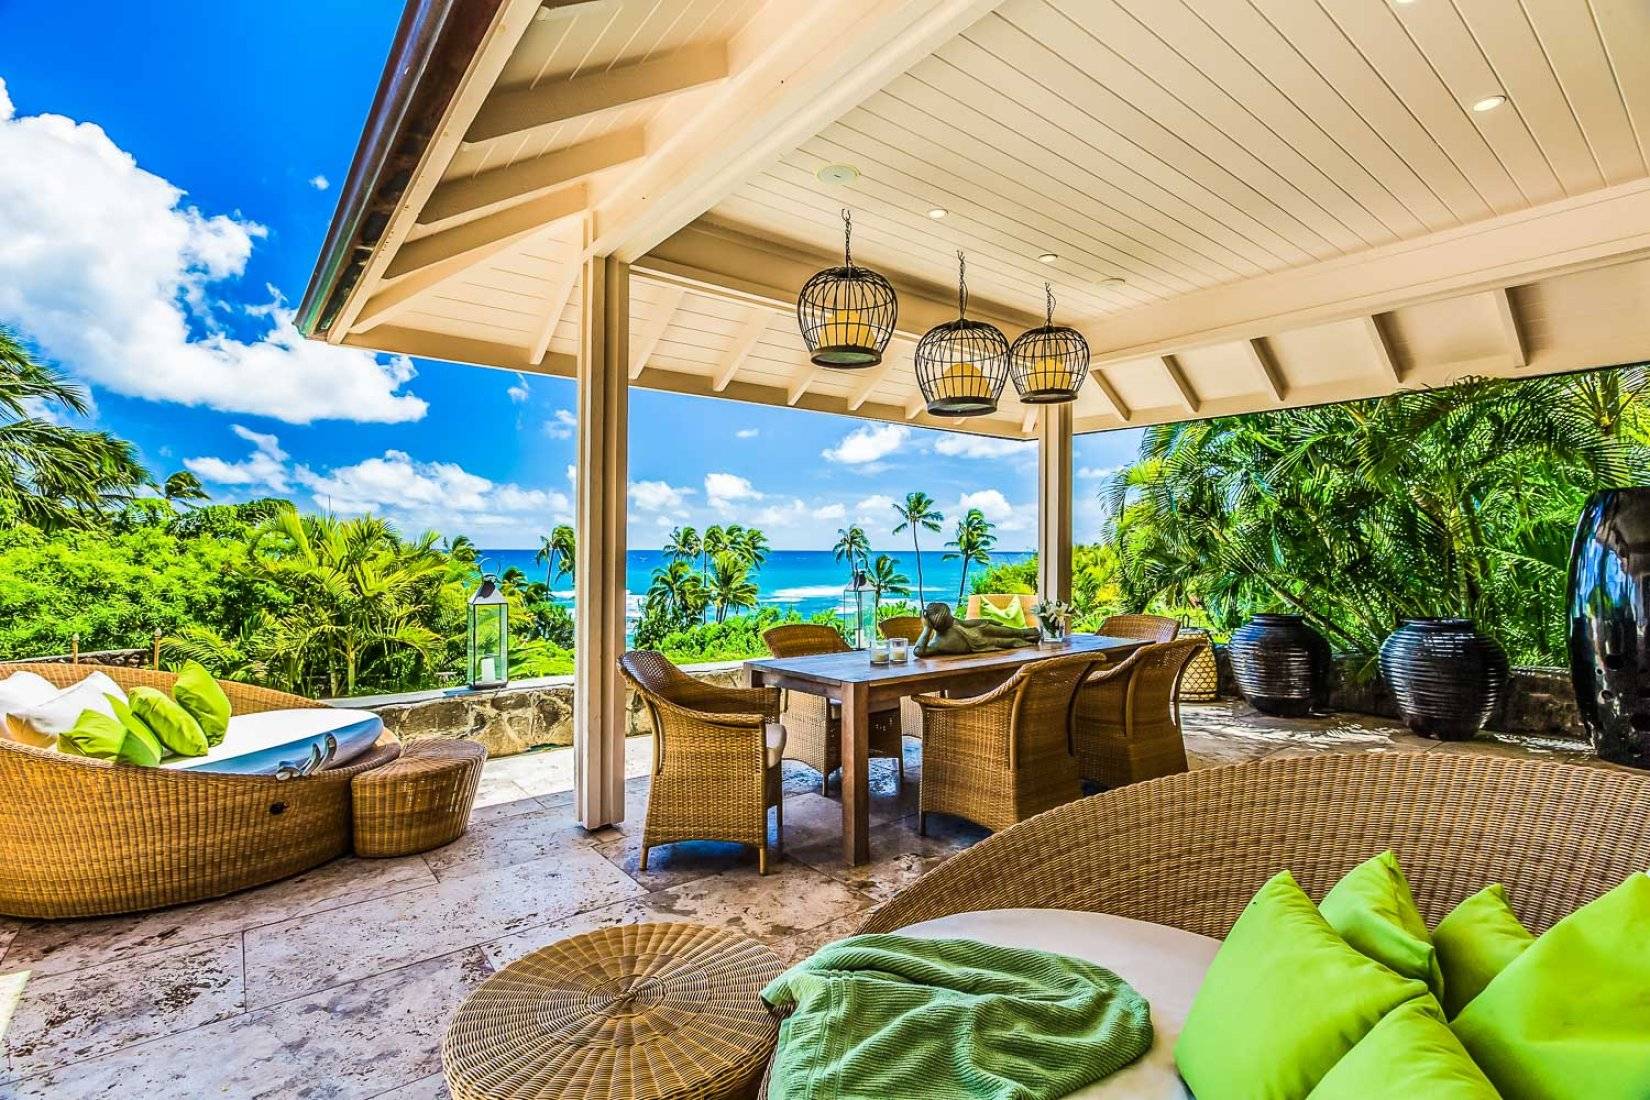 3 Bedroom Ocean view Villa with Pool in Oahu, Hawaii - VillaGetaways